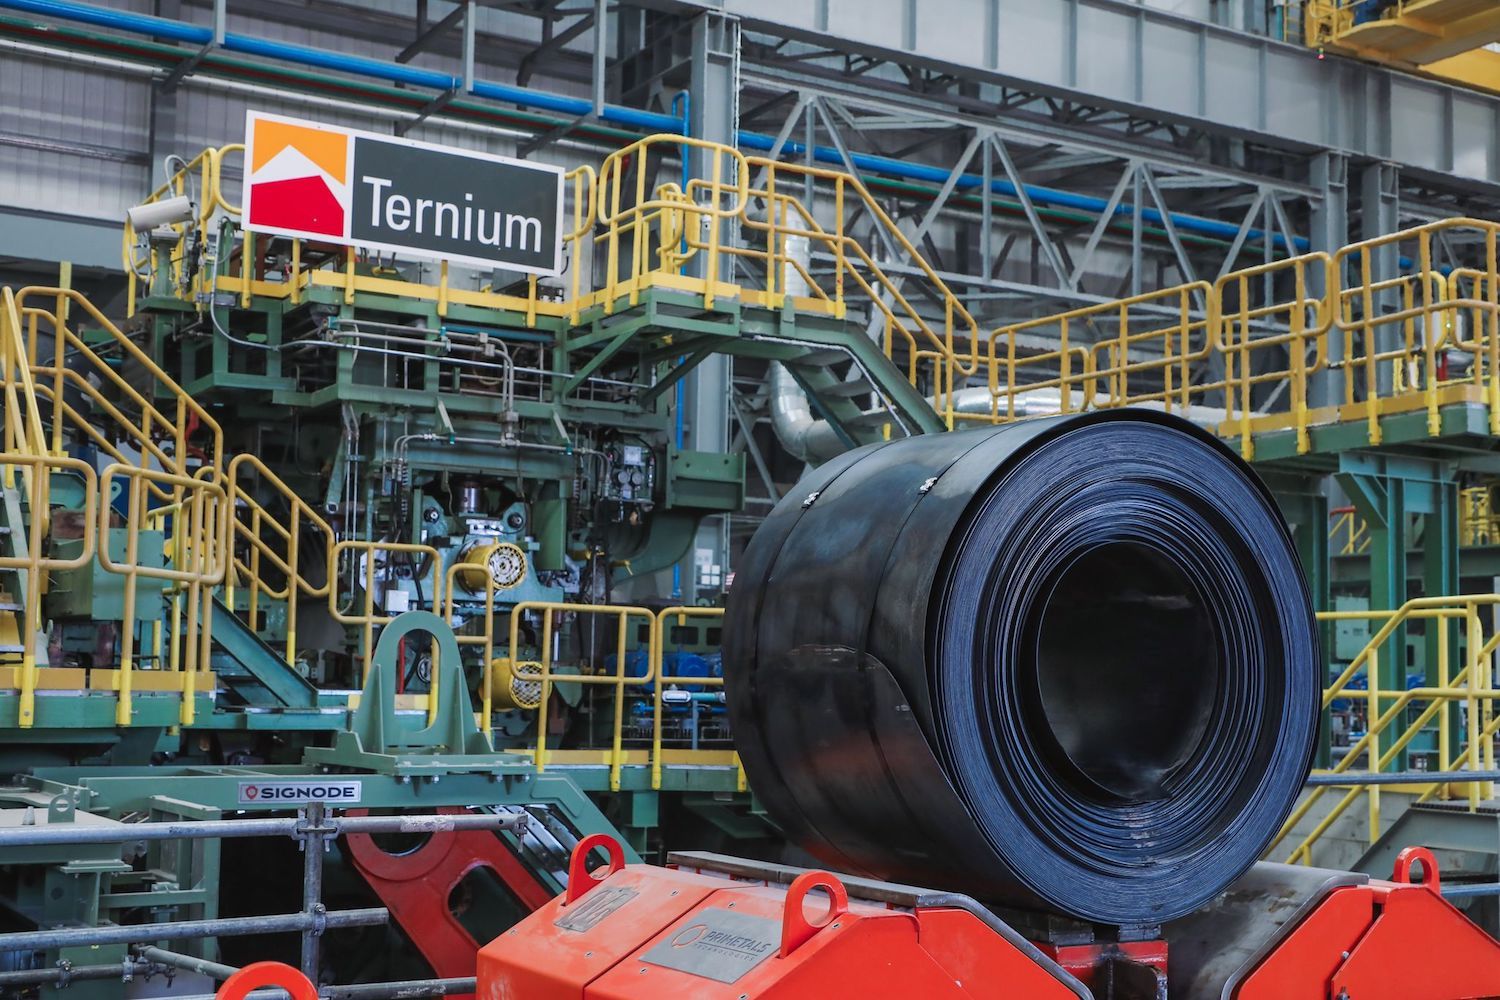 Ternium programa invertir 1,000 millones de dólares para ampliar una planta de acero en Nuevo León, México. Ternium plans to invest 1,000 million dollars to expand a steel plant in Nuevo León, Mexico.